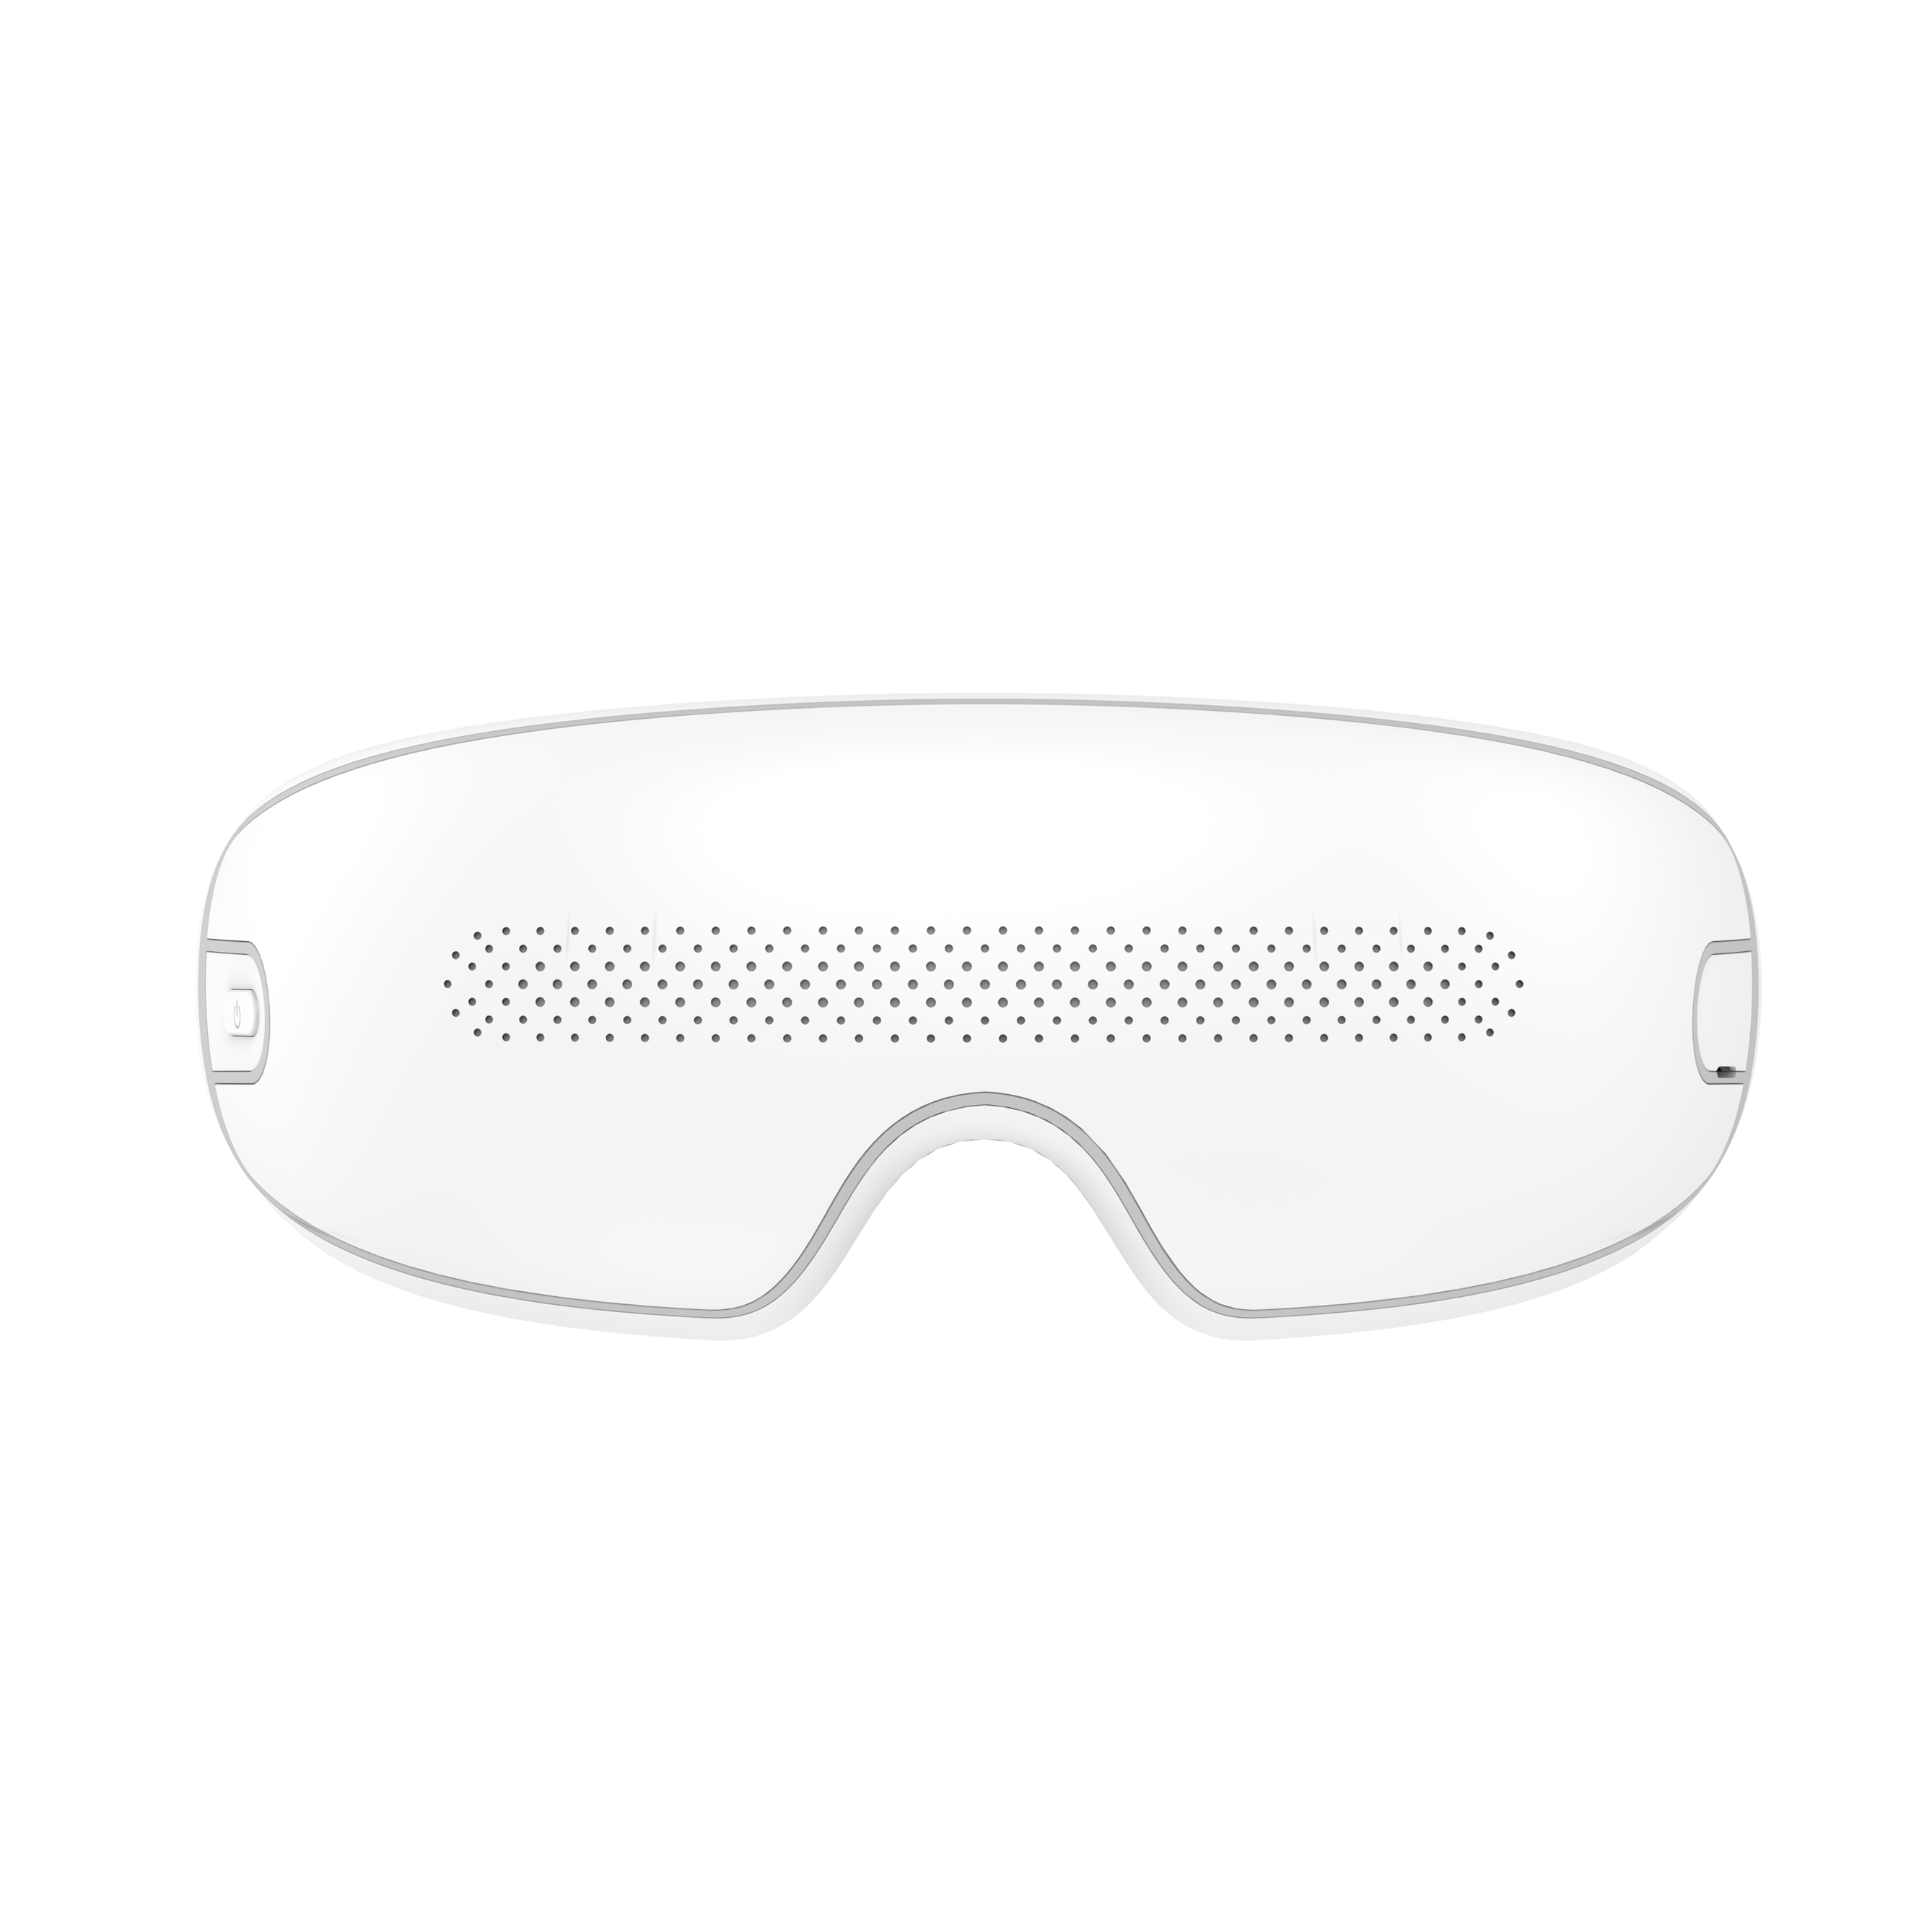 ODM trådlös ögonvårdsmassageapparat med lufttrycksknådning och vibration